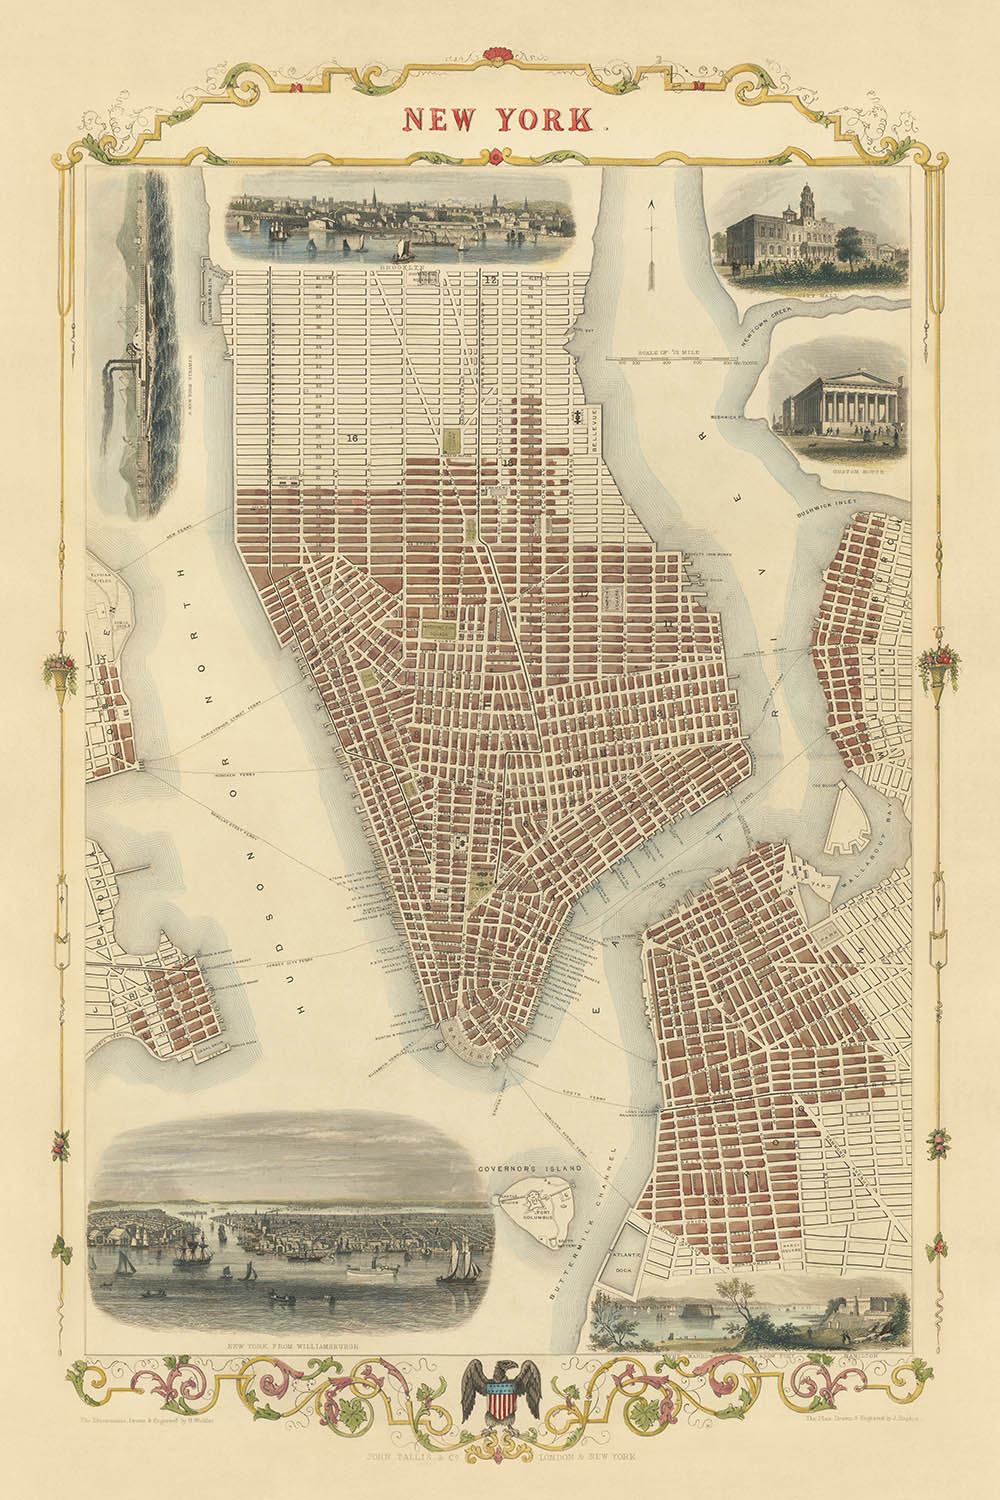 Alte Karte der Vereinigten Staaten von Tallis & Rapkin, 1851: New York City, Brooklyn, Williamsburgh, Rathaus, Zollhaus